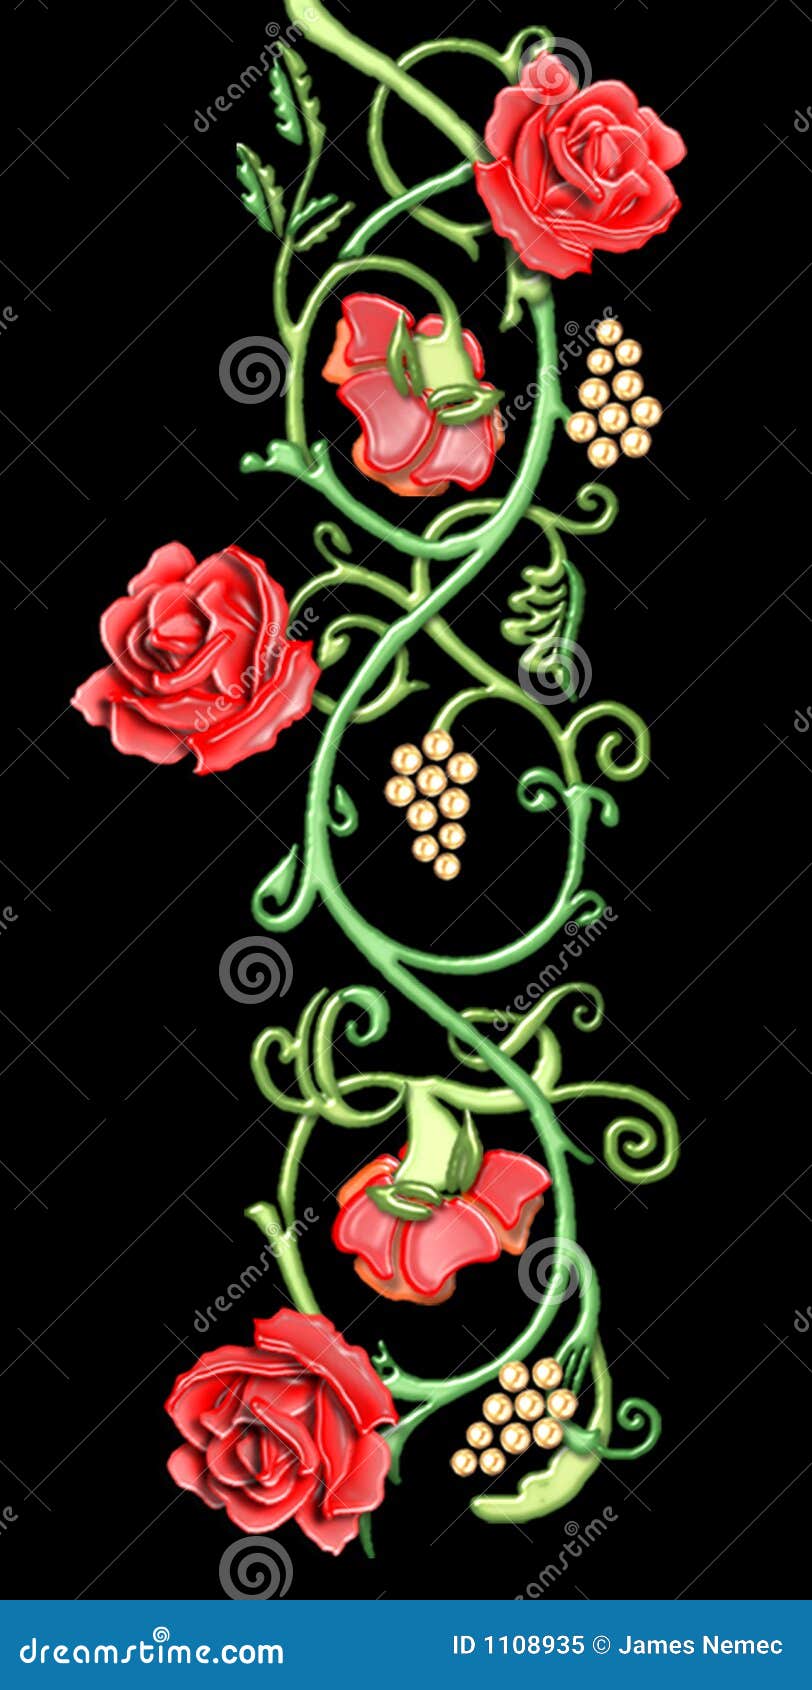 vintage floral motif of red roses